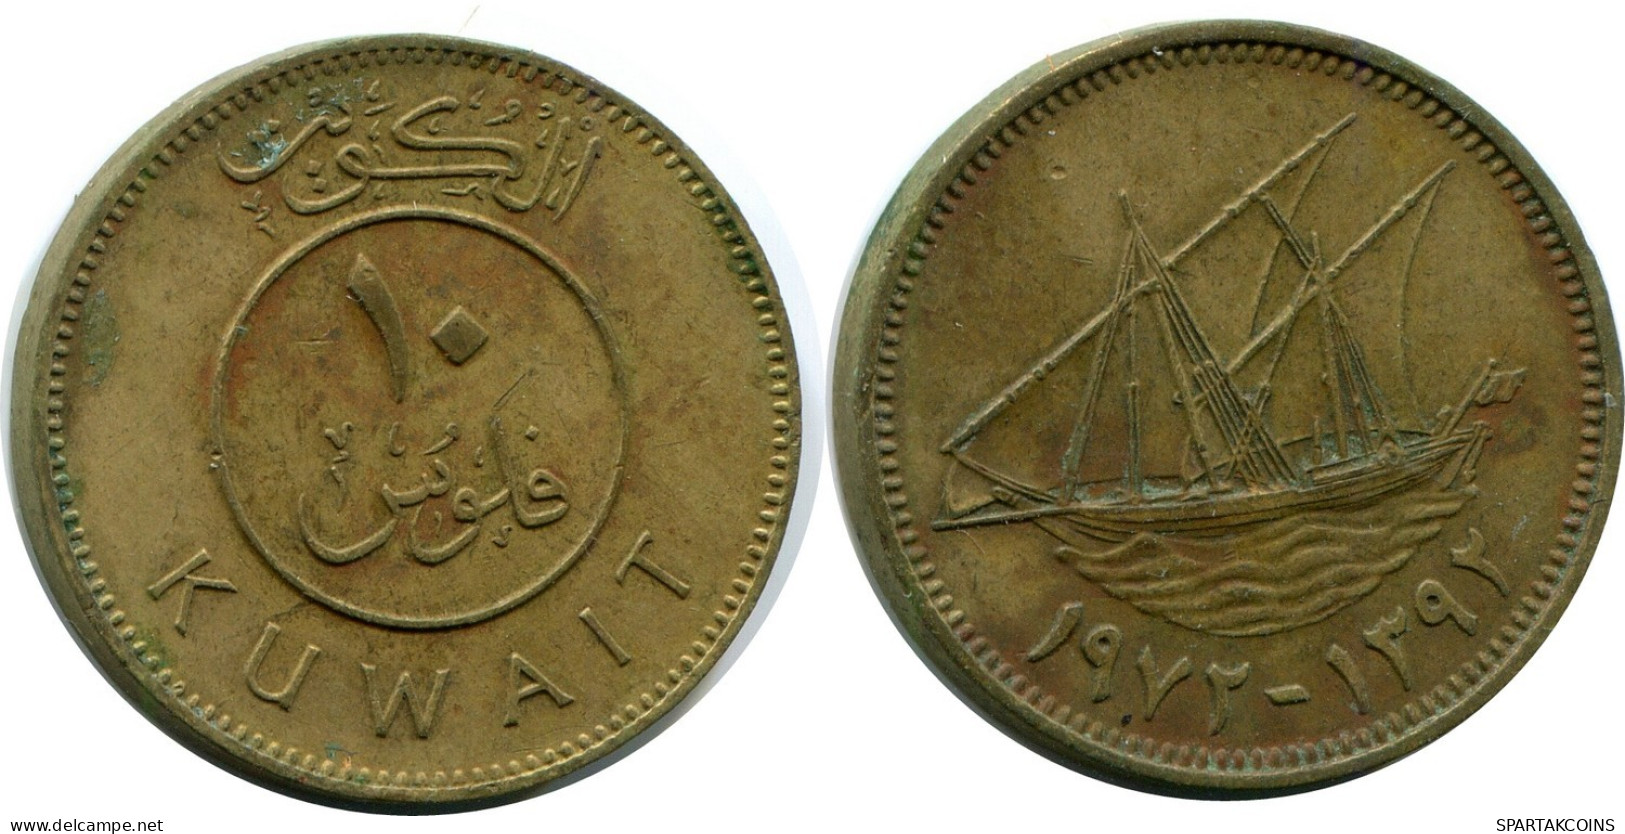 10 FILS 1972 KUWAIT Coin #AP367.U.A - Kuwait